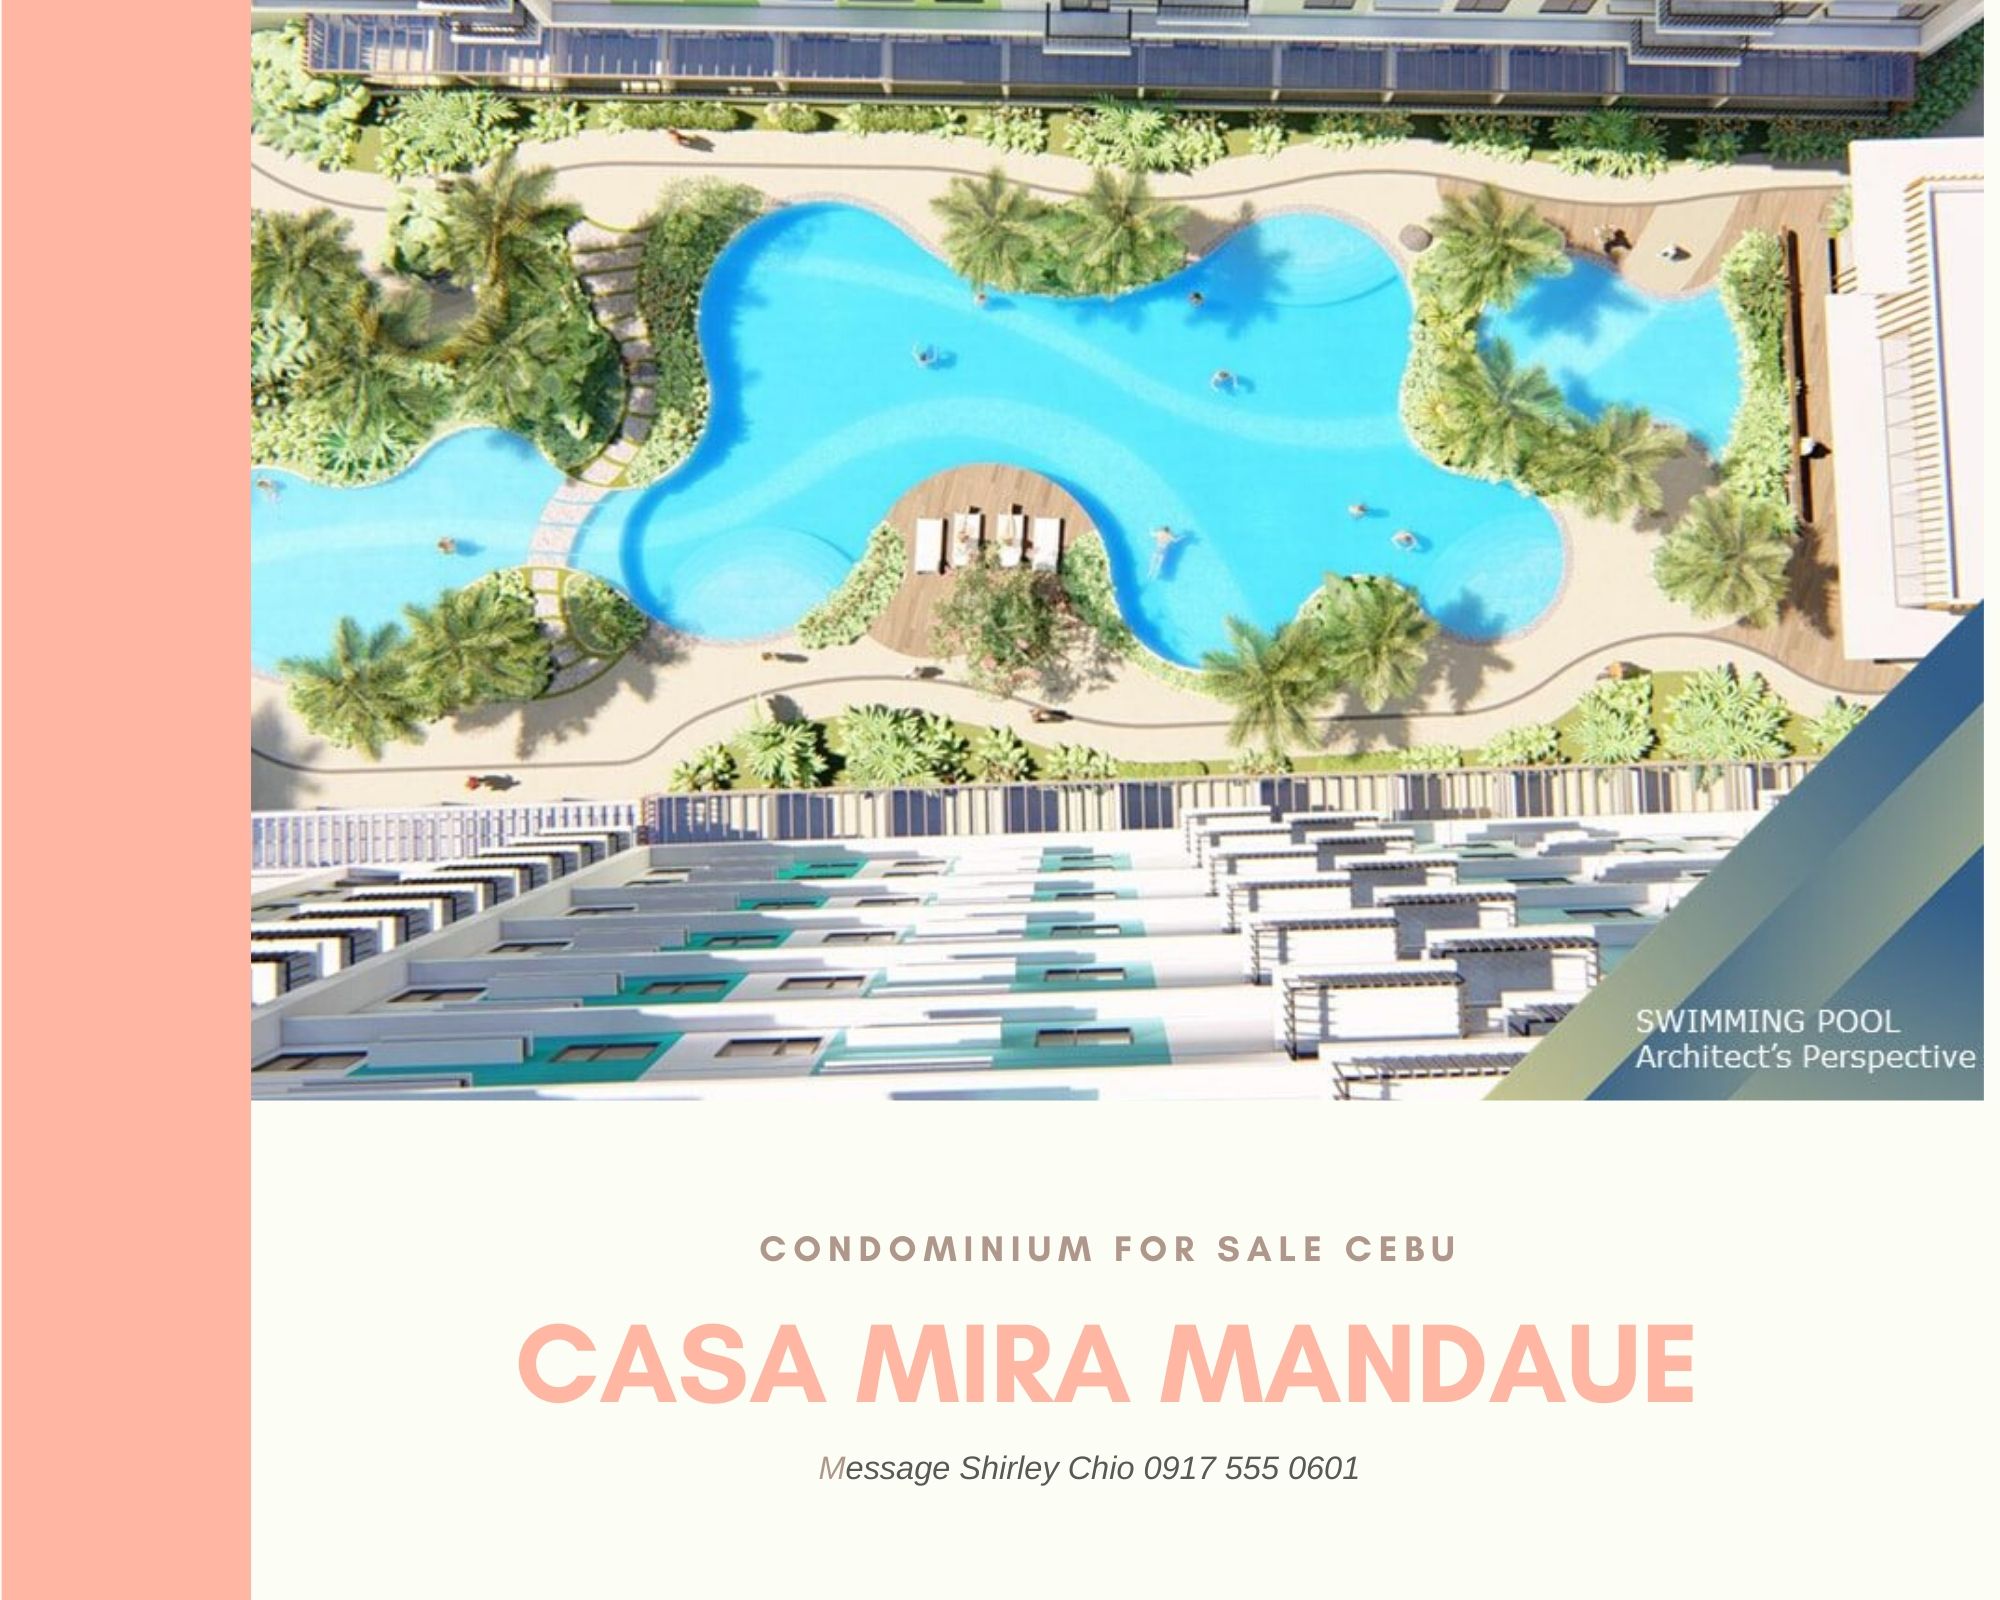 Casa Mira Mandaue condominium for sale in Cebu